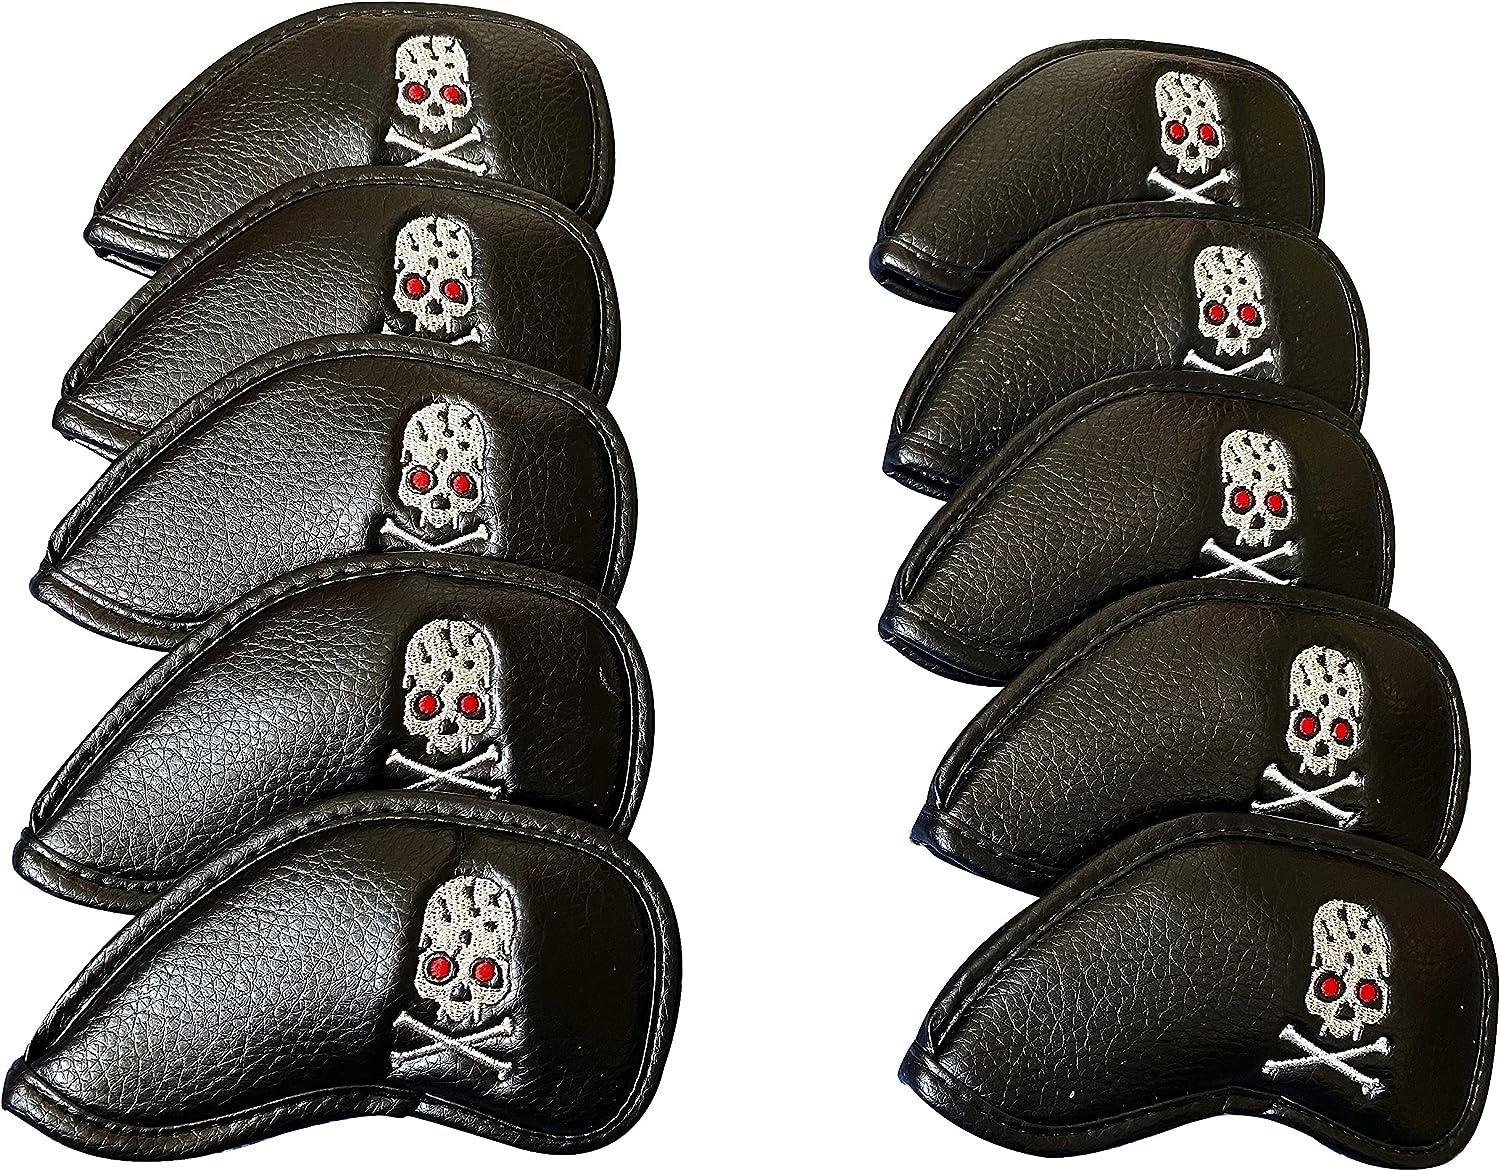 KING SKULL Golf Iron Covers (10pcs/Set)